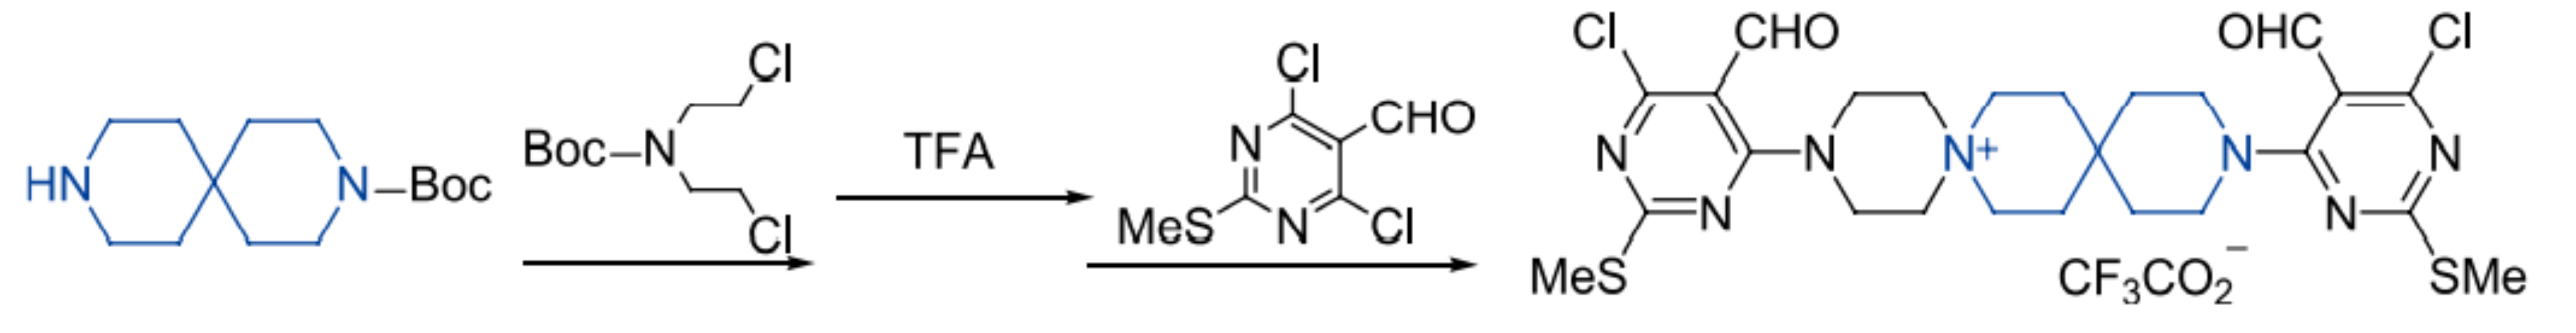 [6+6]螺环化合物用于合成粘结胺类似物